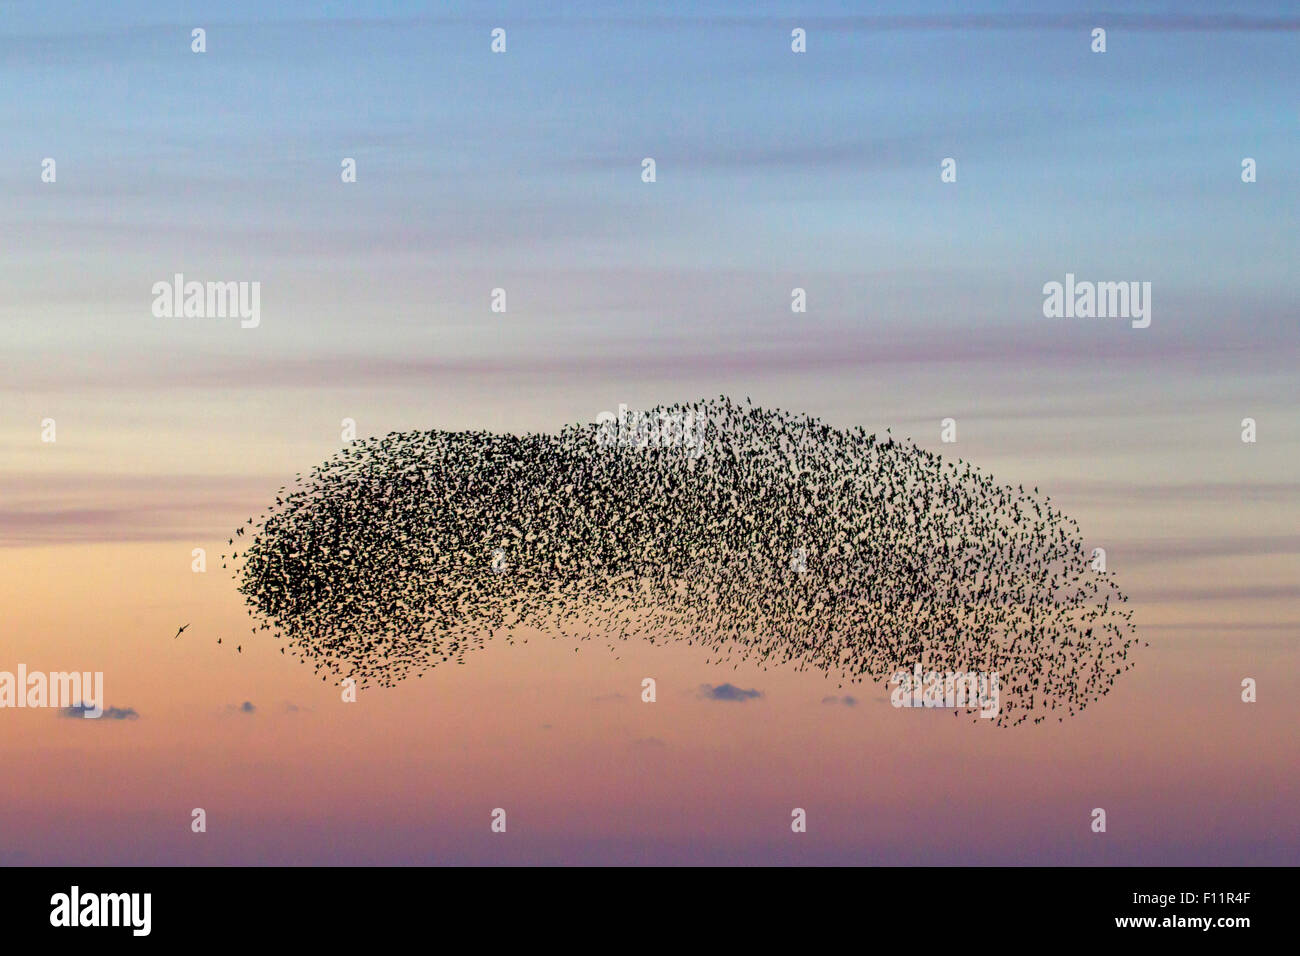 European Starling (Sturnus vulgaris), flock at dusk engaging pre-roost display Stock Photo